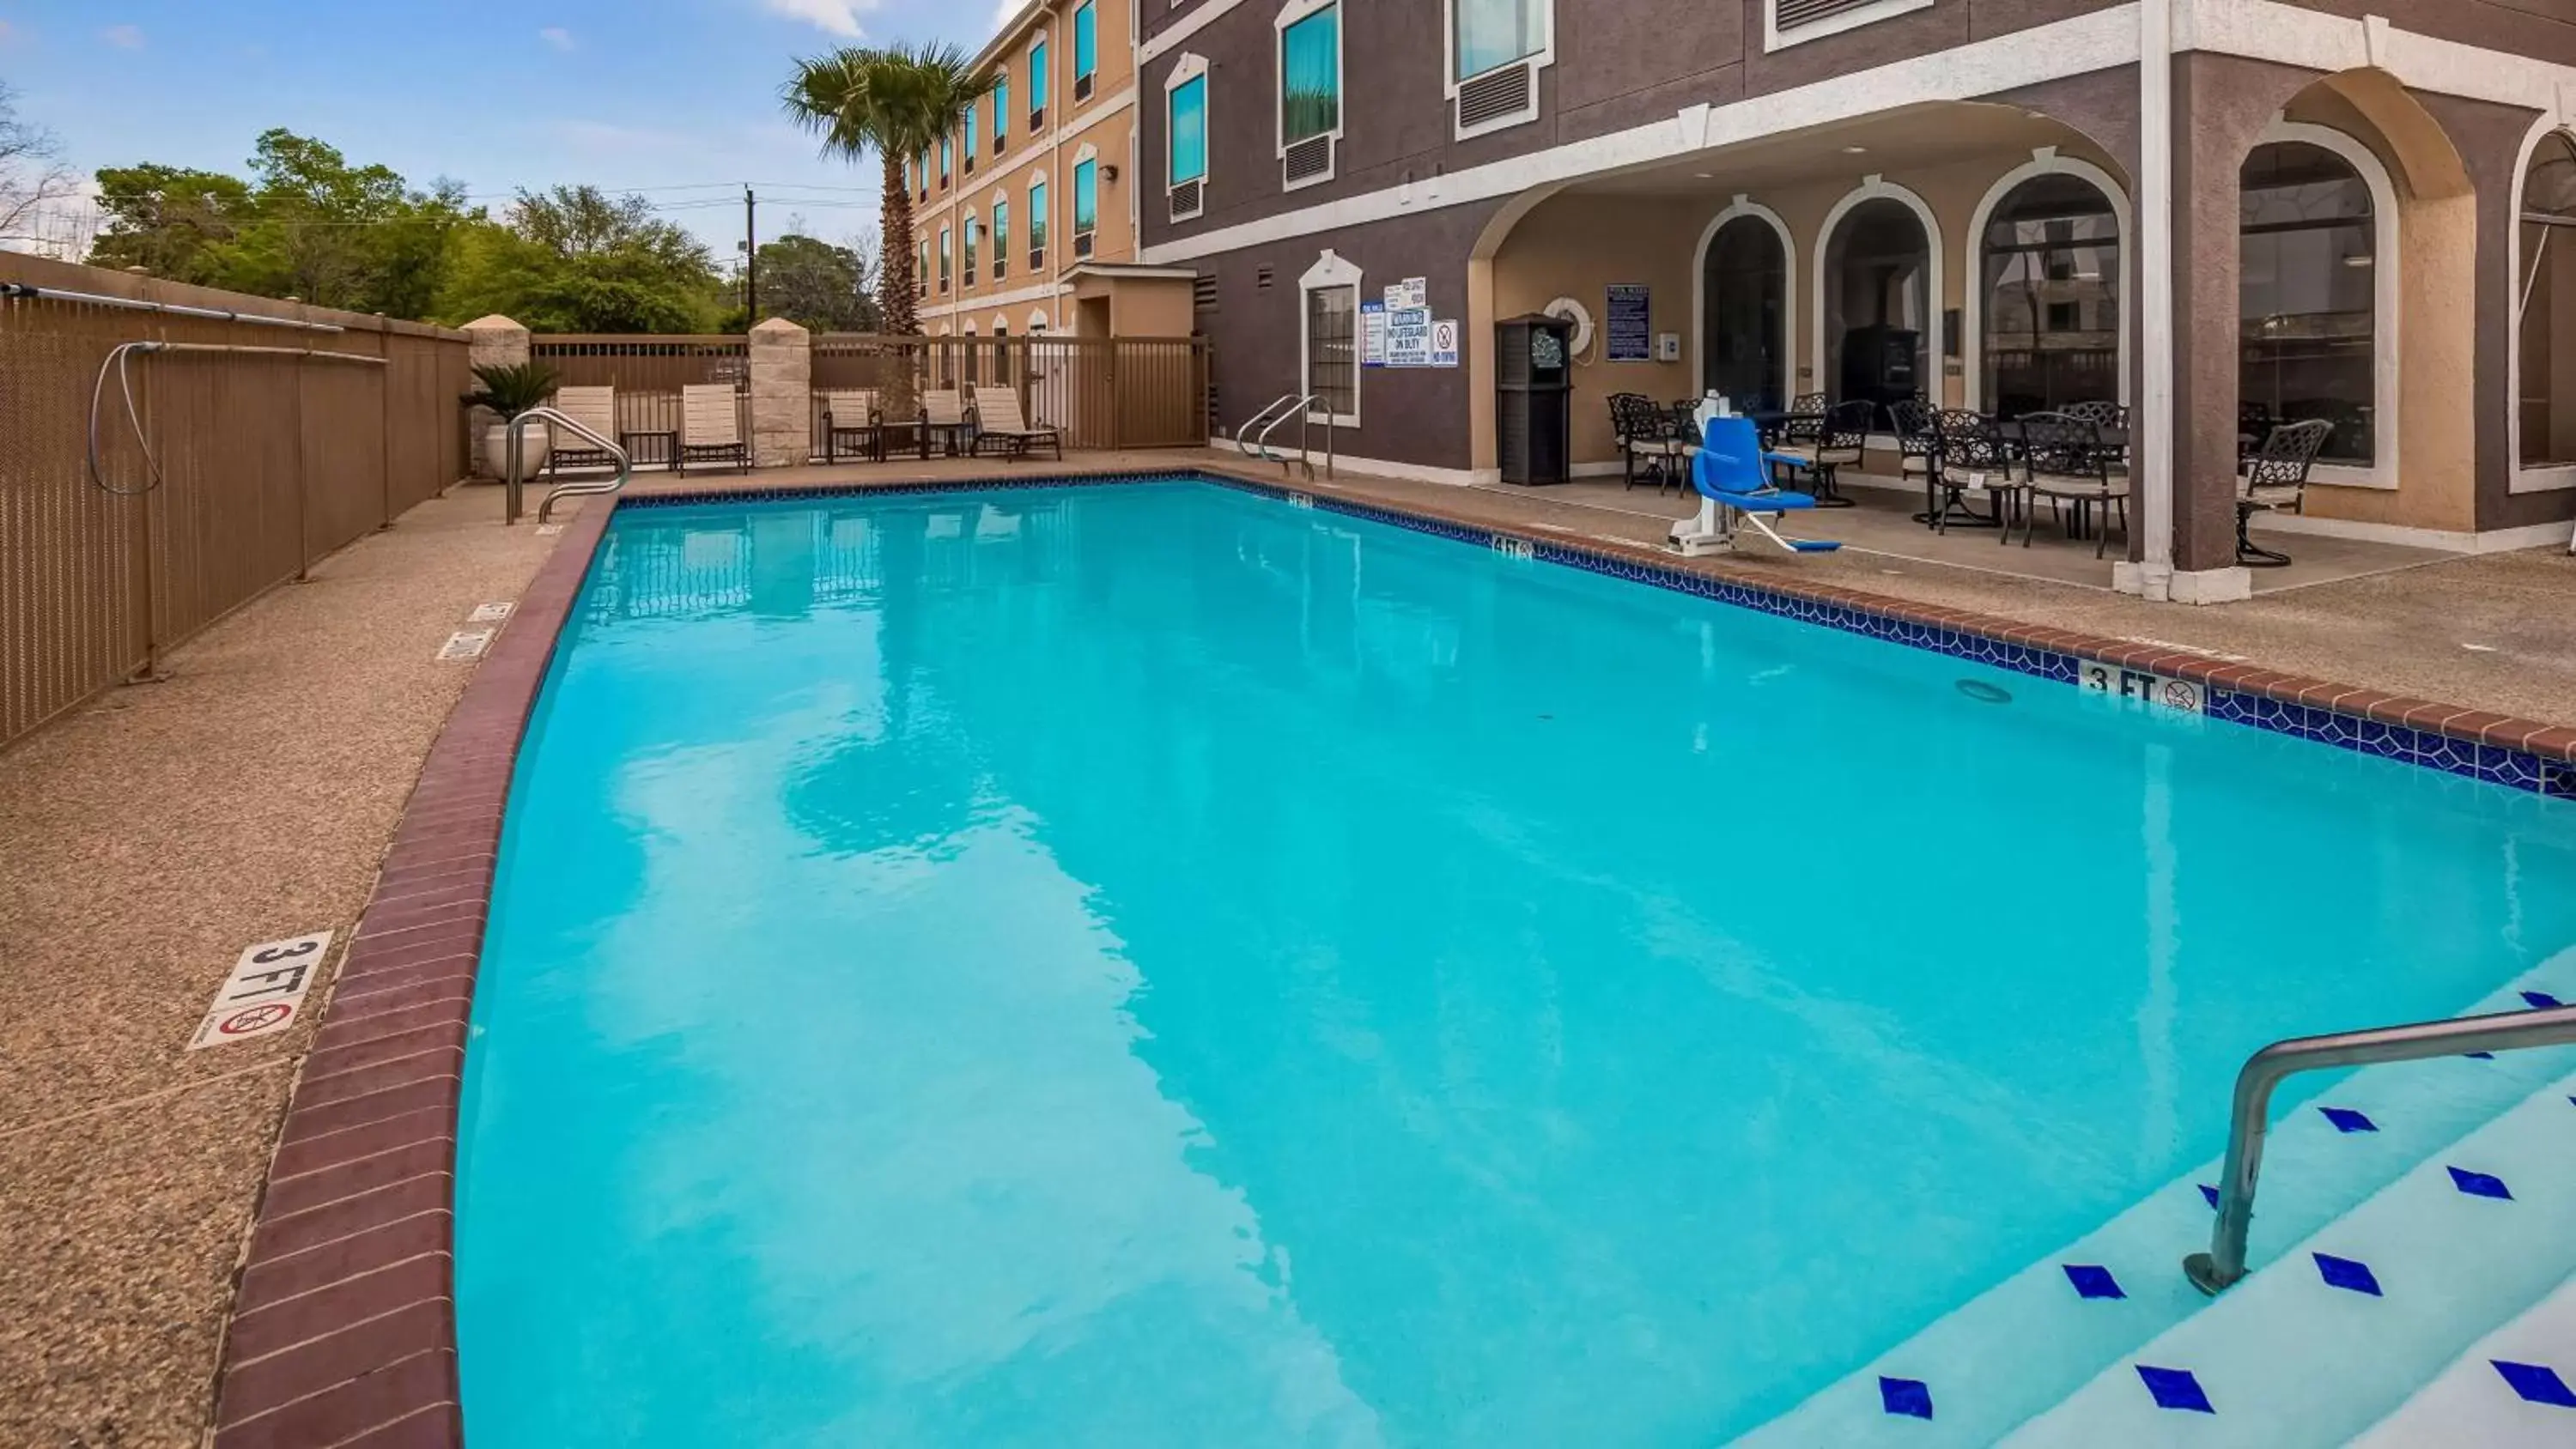 On site, Swimming Pool in Best Western Plus Heritage Inn Houston